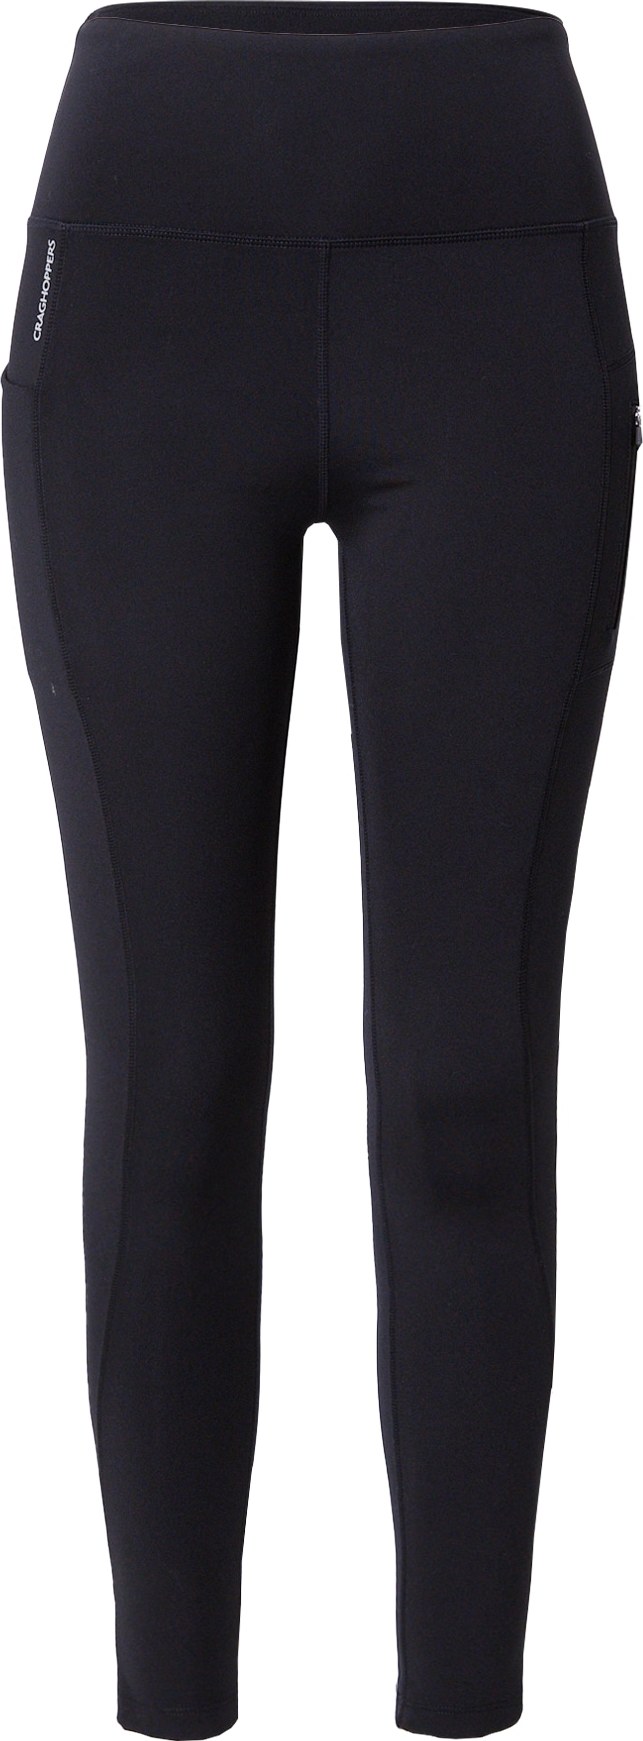 CRAGHOPPERS Outdoorové kalhoty 'Kiwi Pro' černá / bílá